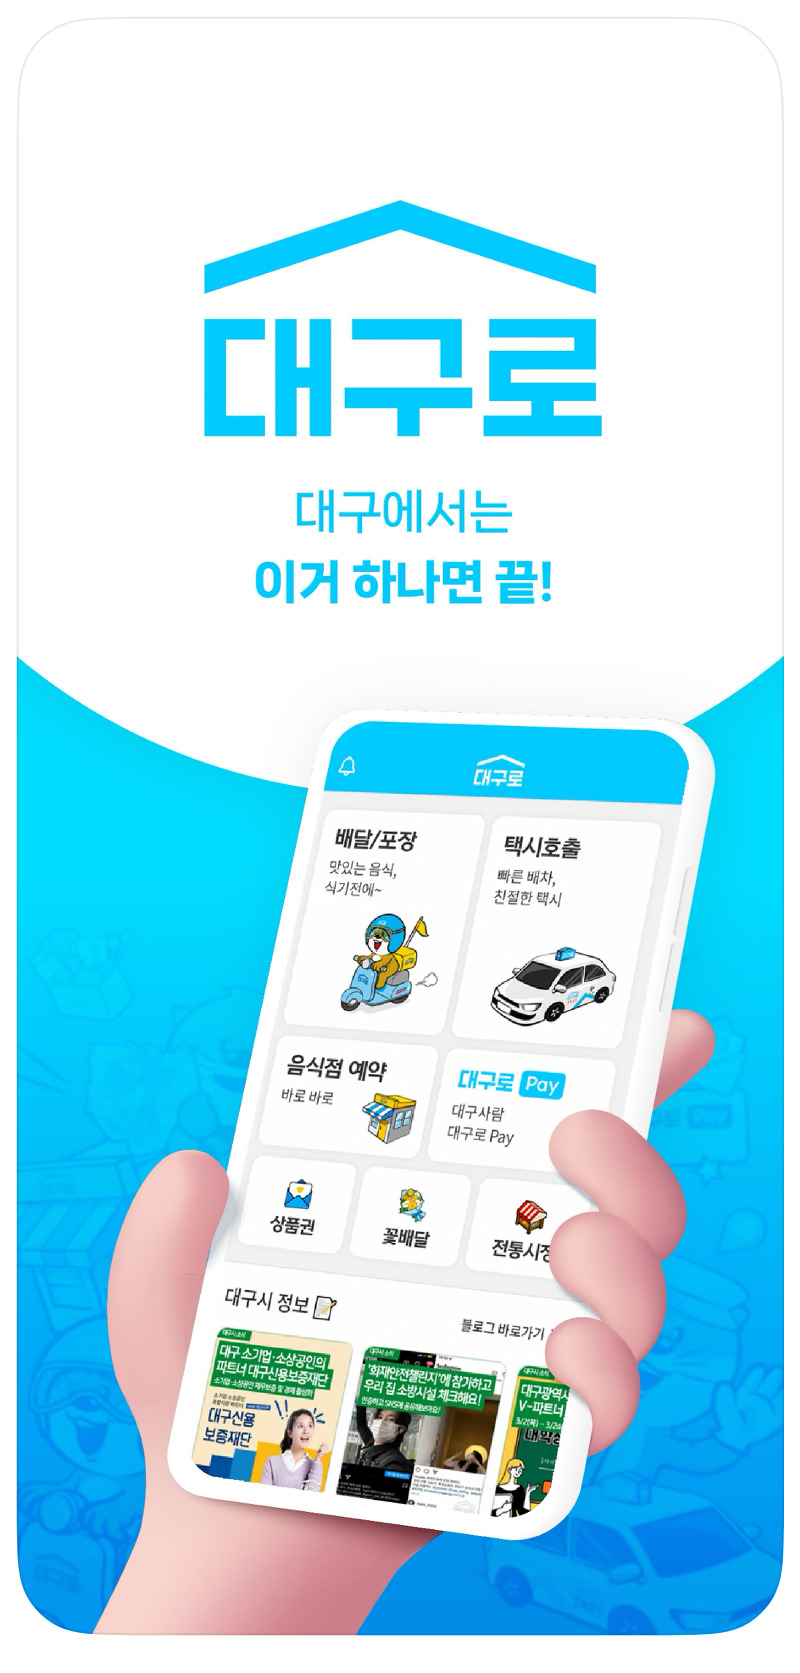 대구로 앱으로 더 편리한 시내버스 이용, 실시간 정보와 더욱 가까이!